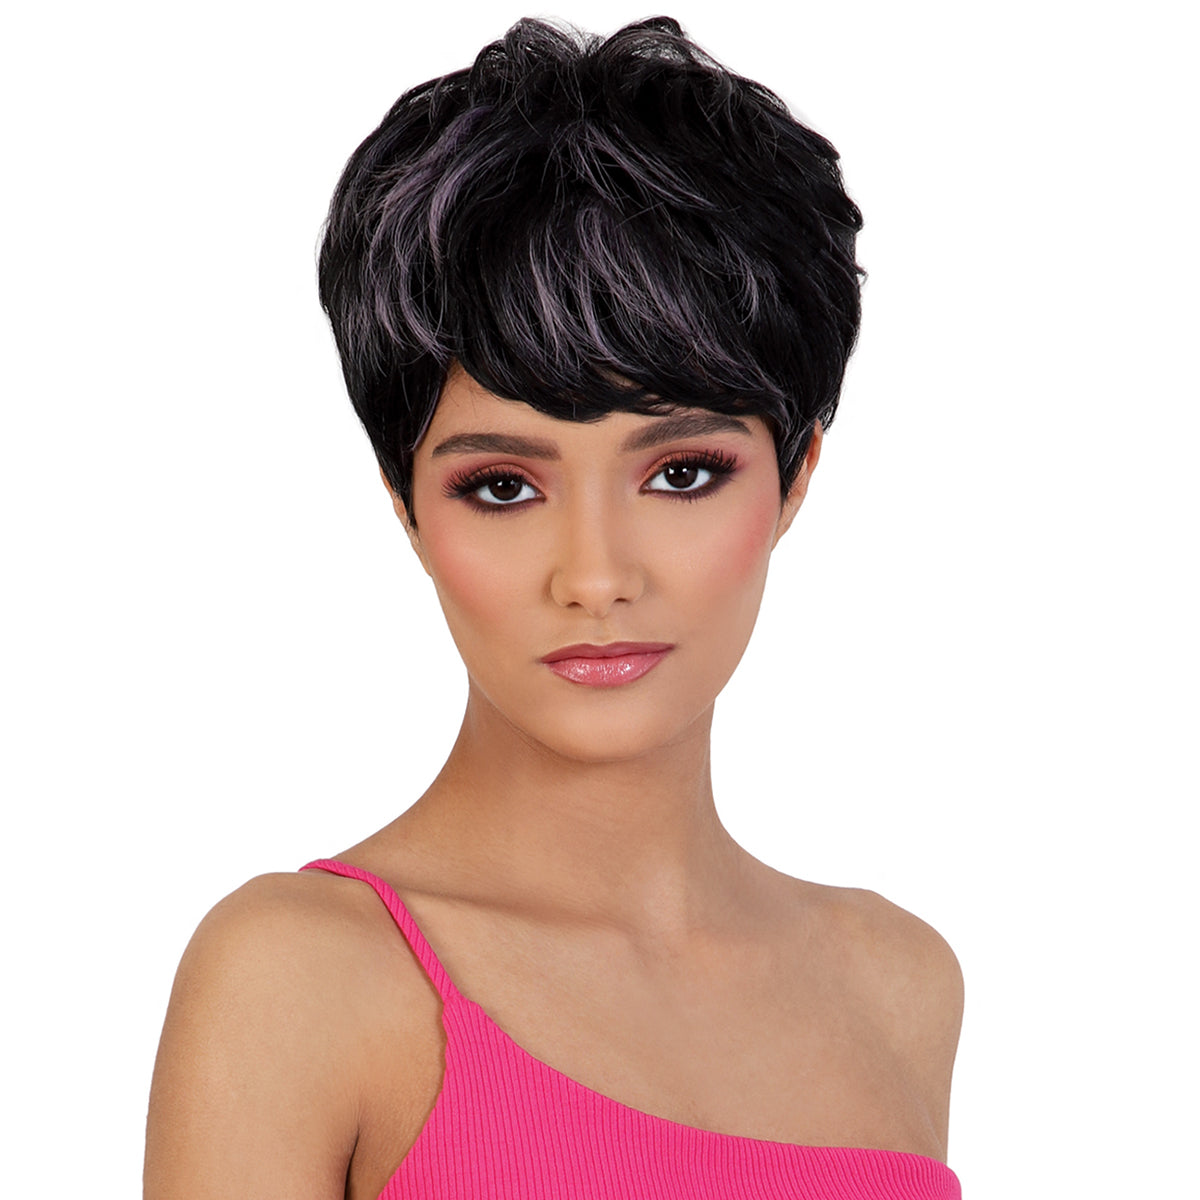 Motown Tress Go Girl Synthetic Hair Wig - GGC MARGO